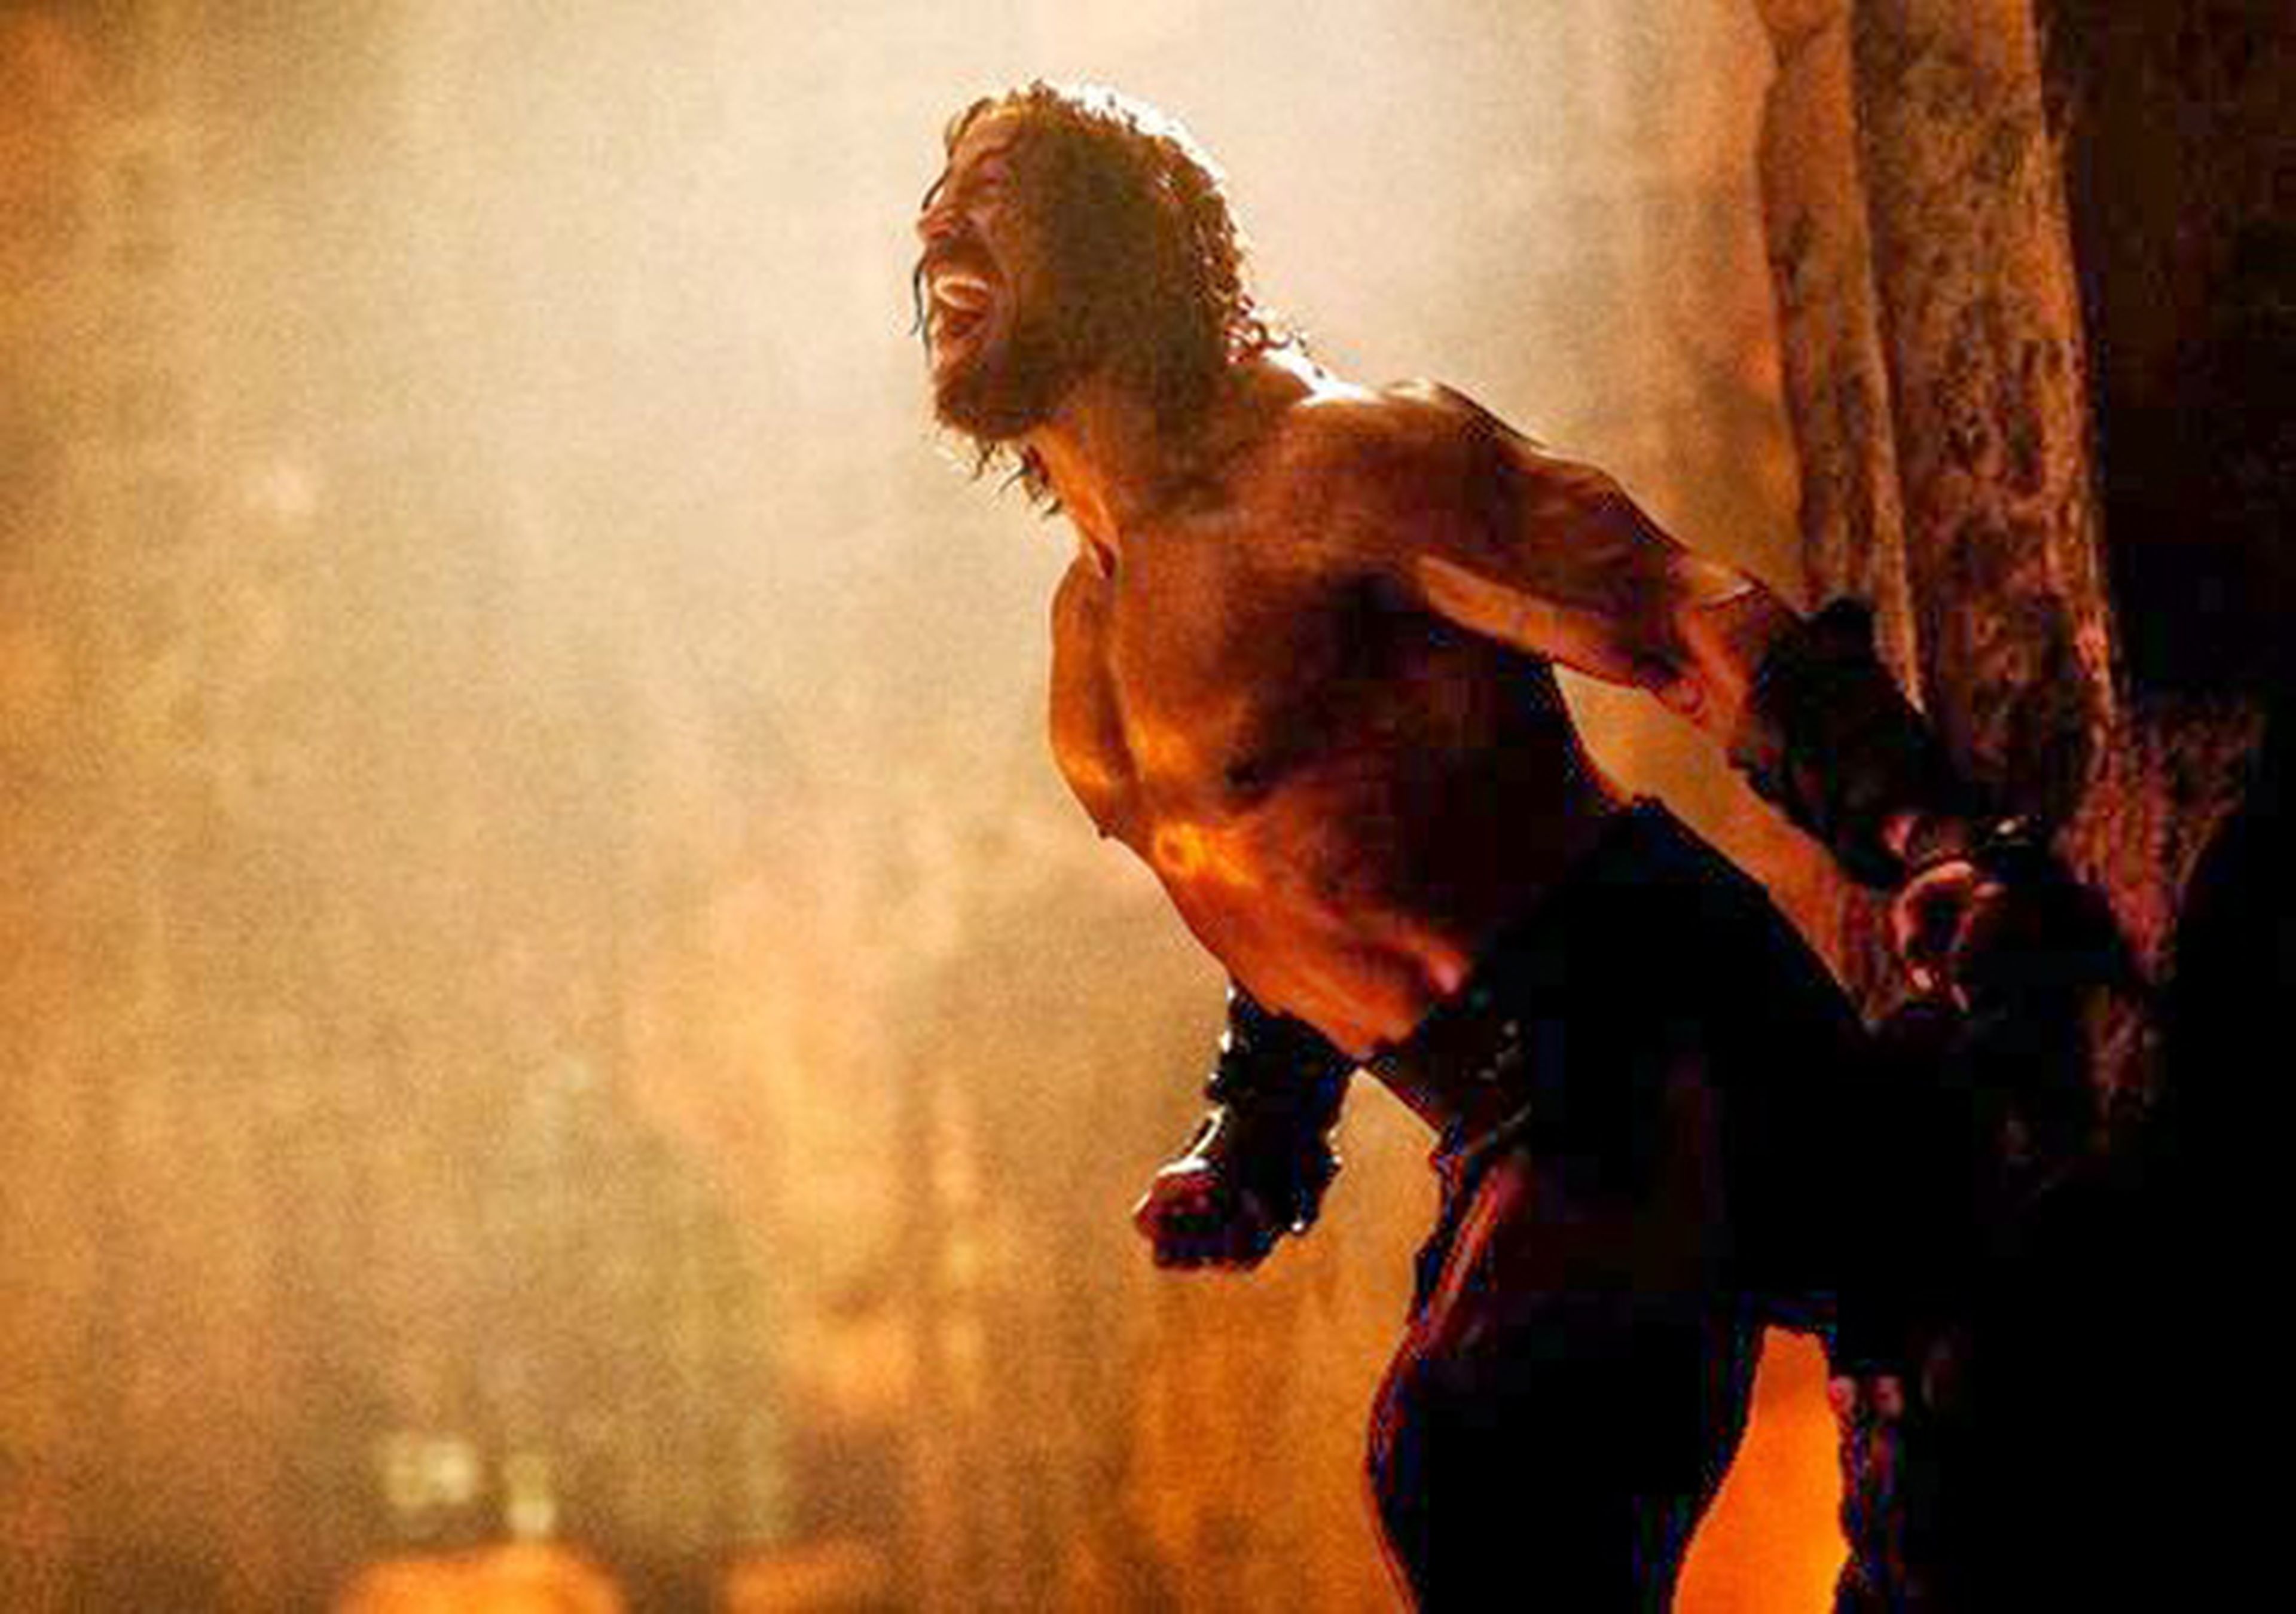 ¡Imágenes de Dwayne Johnson "La Roca" como Hércules!